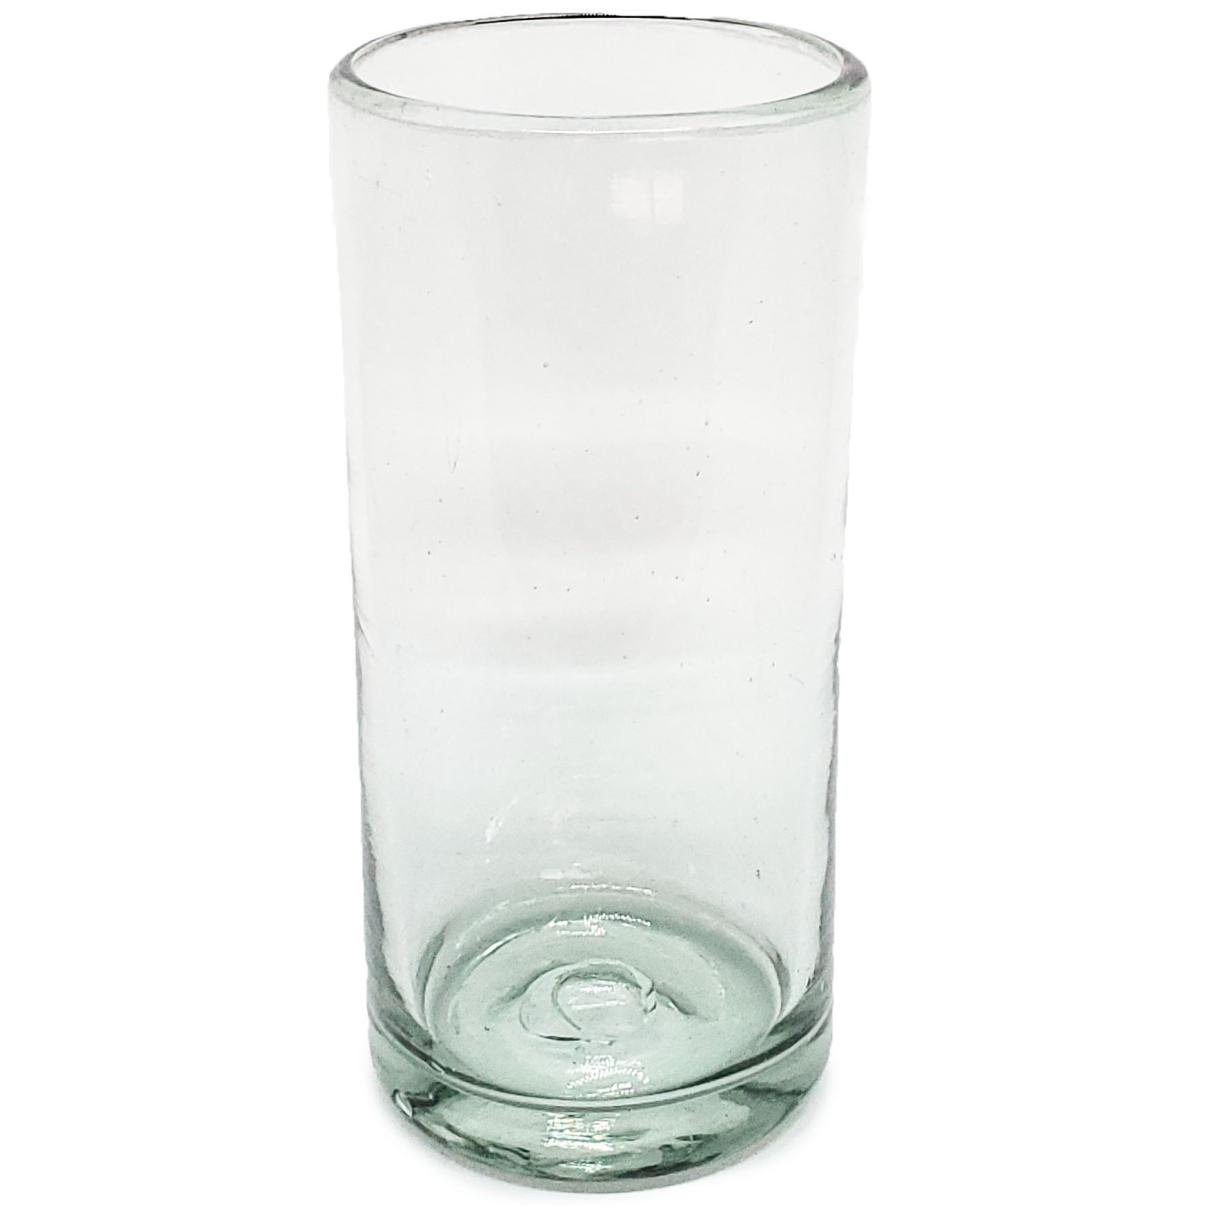 Vasos de Vidrio Soplado / Juego de 6 vasos Jumbo transparentes / ste clsico juego de vasos jumbo est hecho con vidrio reciclado. Contiene pequeas burbujas atrapadas en el vaso.